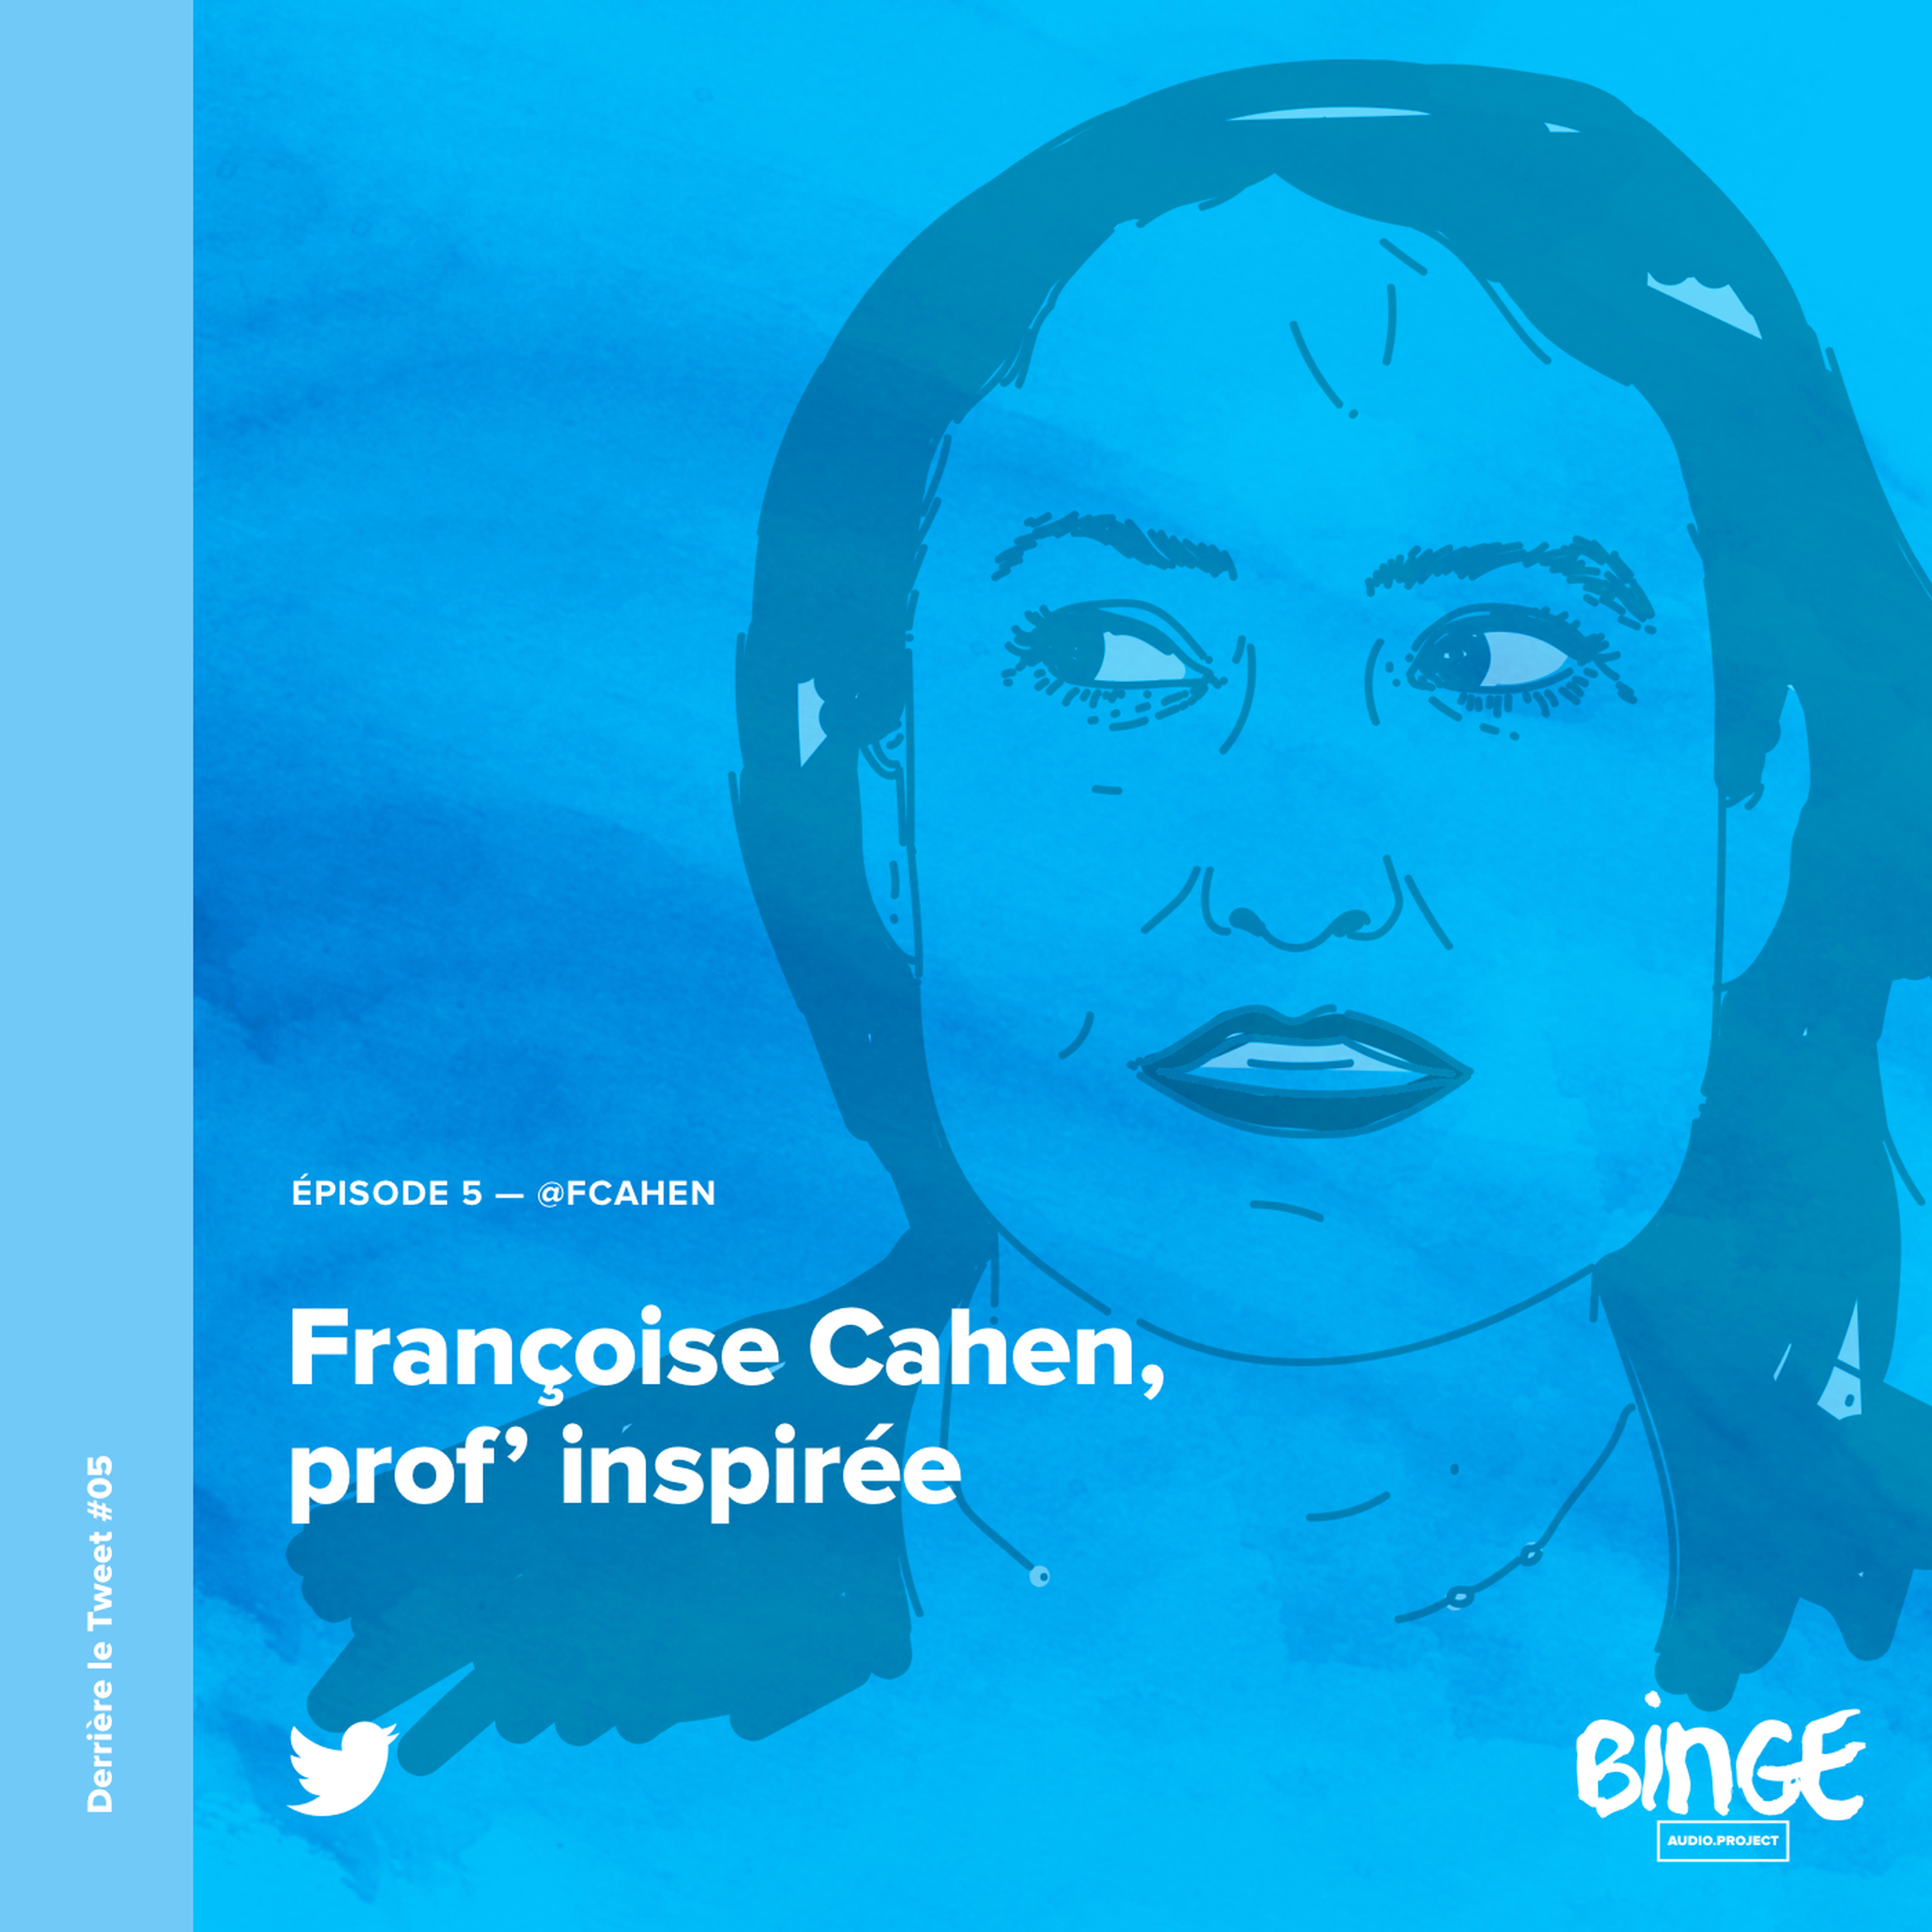 Françoise Cahen, prof’ inspirée